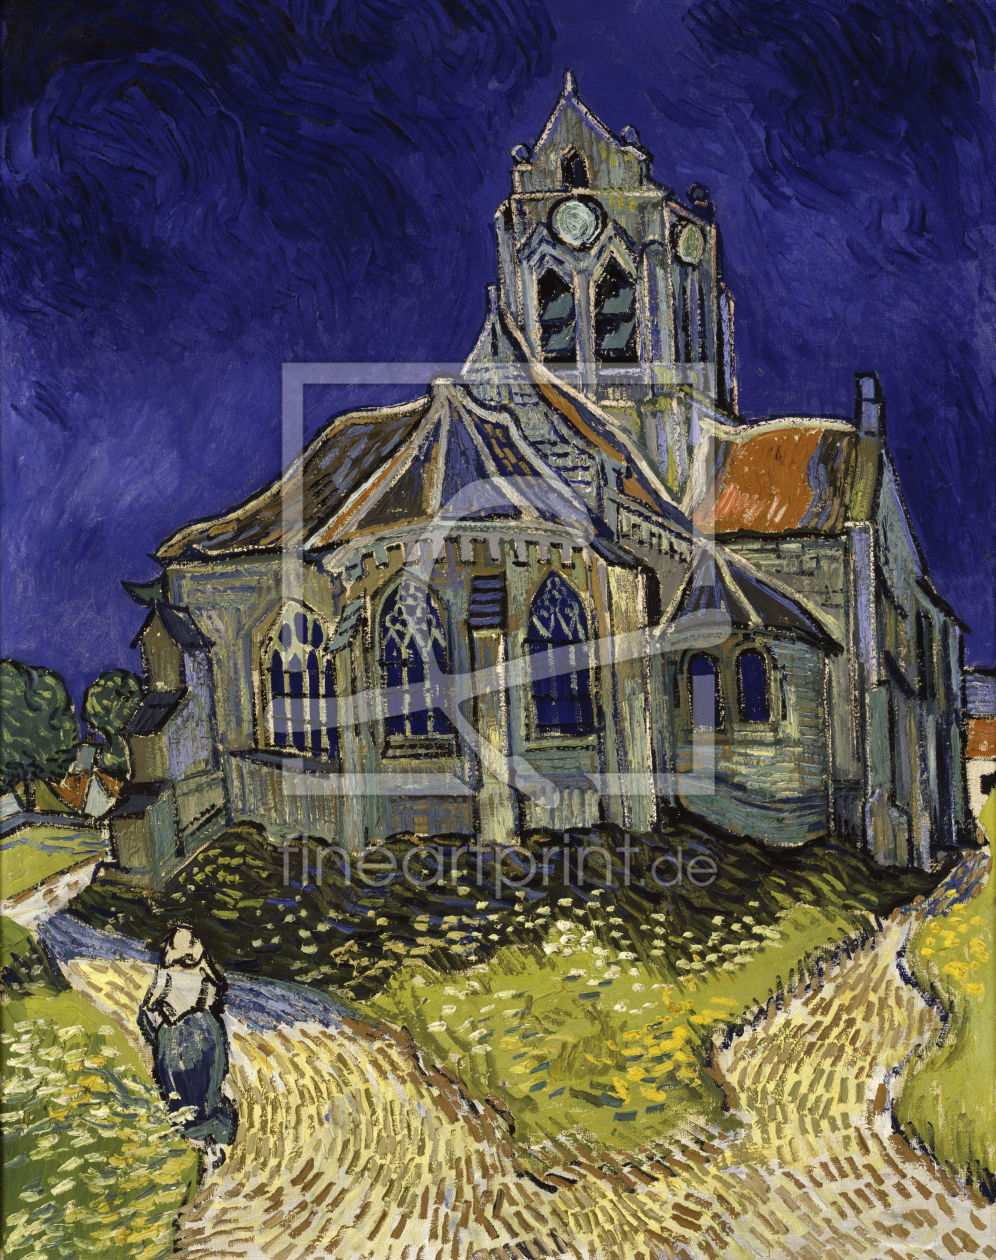 Bild-Nr.: 30002880 van Gogh/Church in Auvers-sur-Oise/1890 erstellt von van Gogh, Vincent